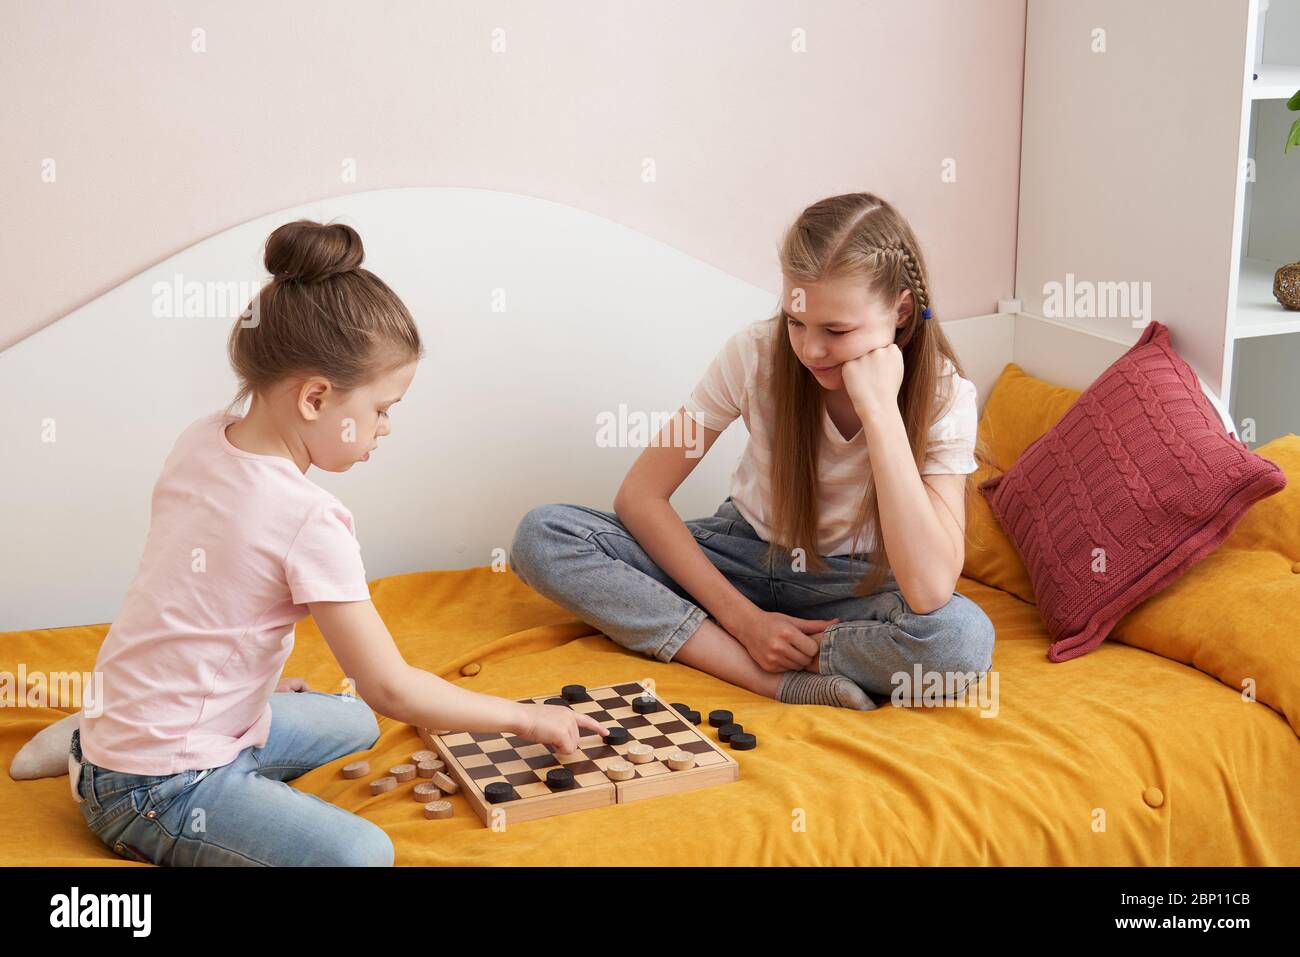 Сестра с братом в карты на раздевание. Дети 2 сестры играют на раздевание. Две сестры лежа на полу играют в шашки. Во что можно поиграть с сестренкой. Брат с сестрой играли в игру на раздевание а потом потрахались.